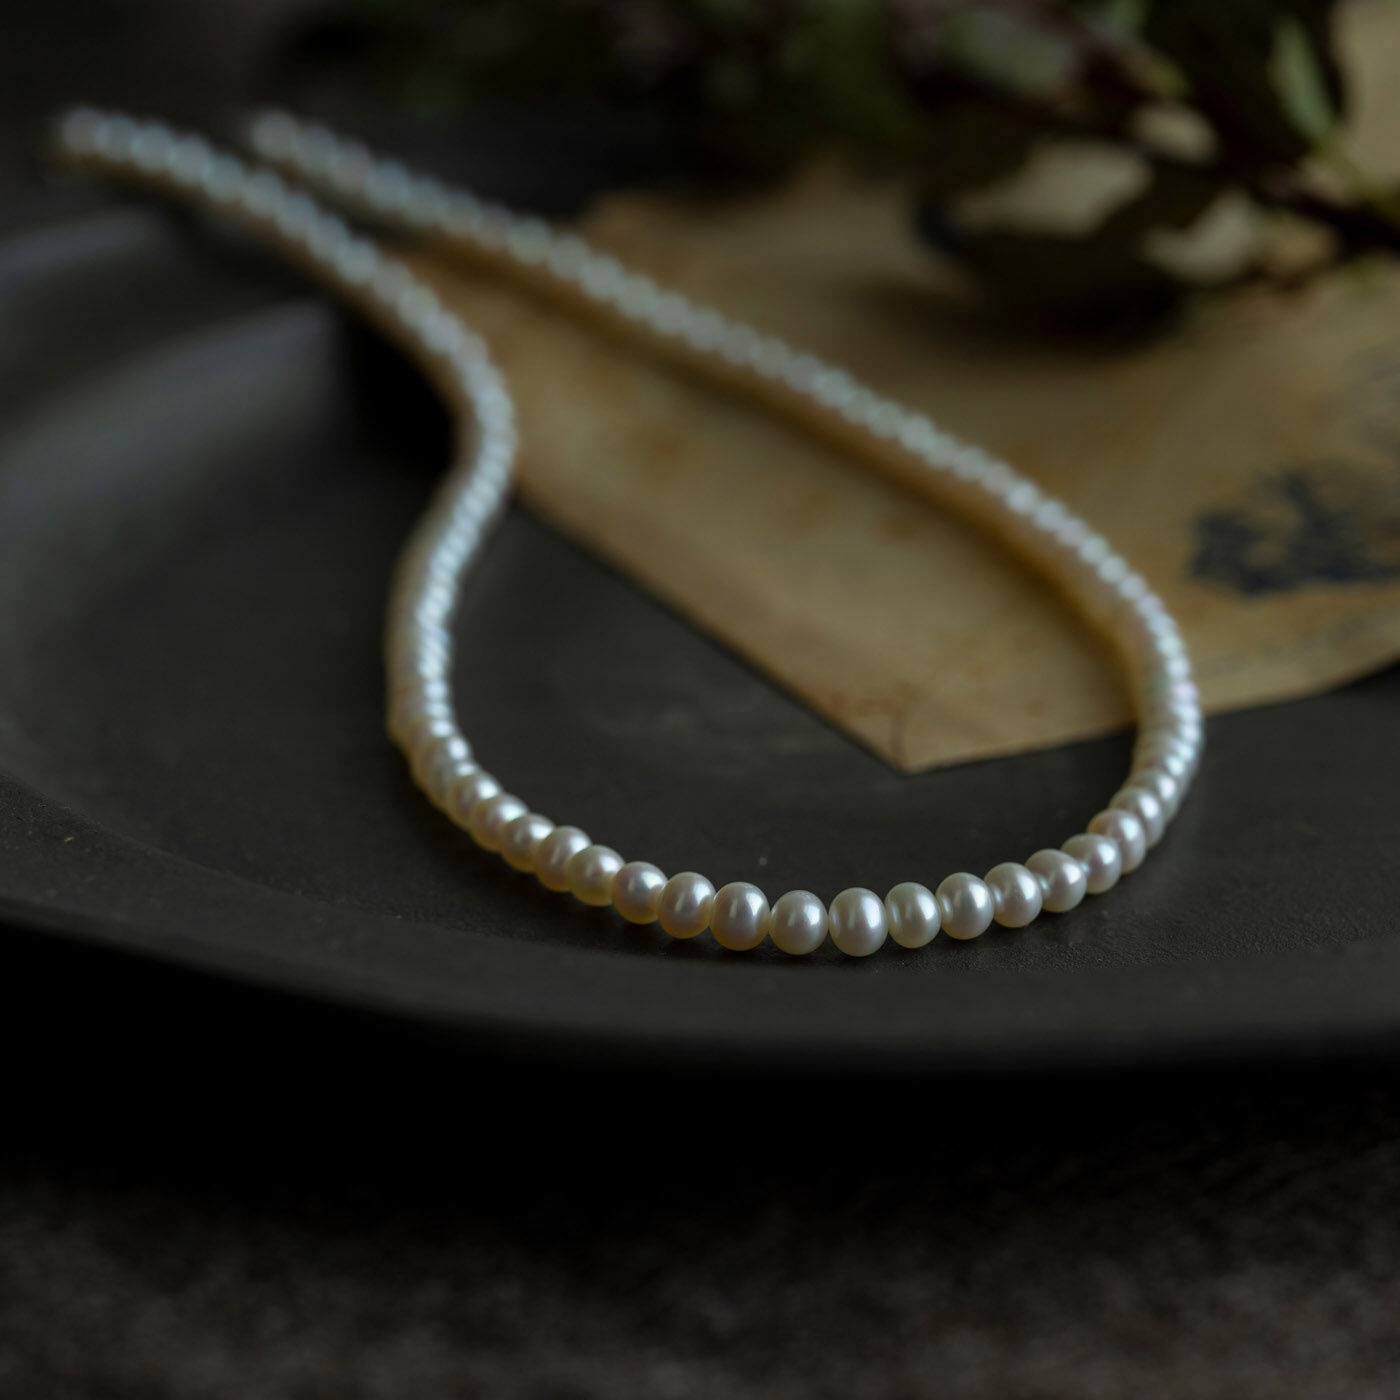 ＆Stories|神戸の老舗真珠メーカーが手掛けた 淡水パールのネックレス〈シルバー925〉|神戸の老舗真珠メーカーさんが、日常使いにちょうどいい品質のパールを厳選し、シンプルなネックレスを作ってくれました。